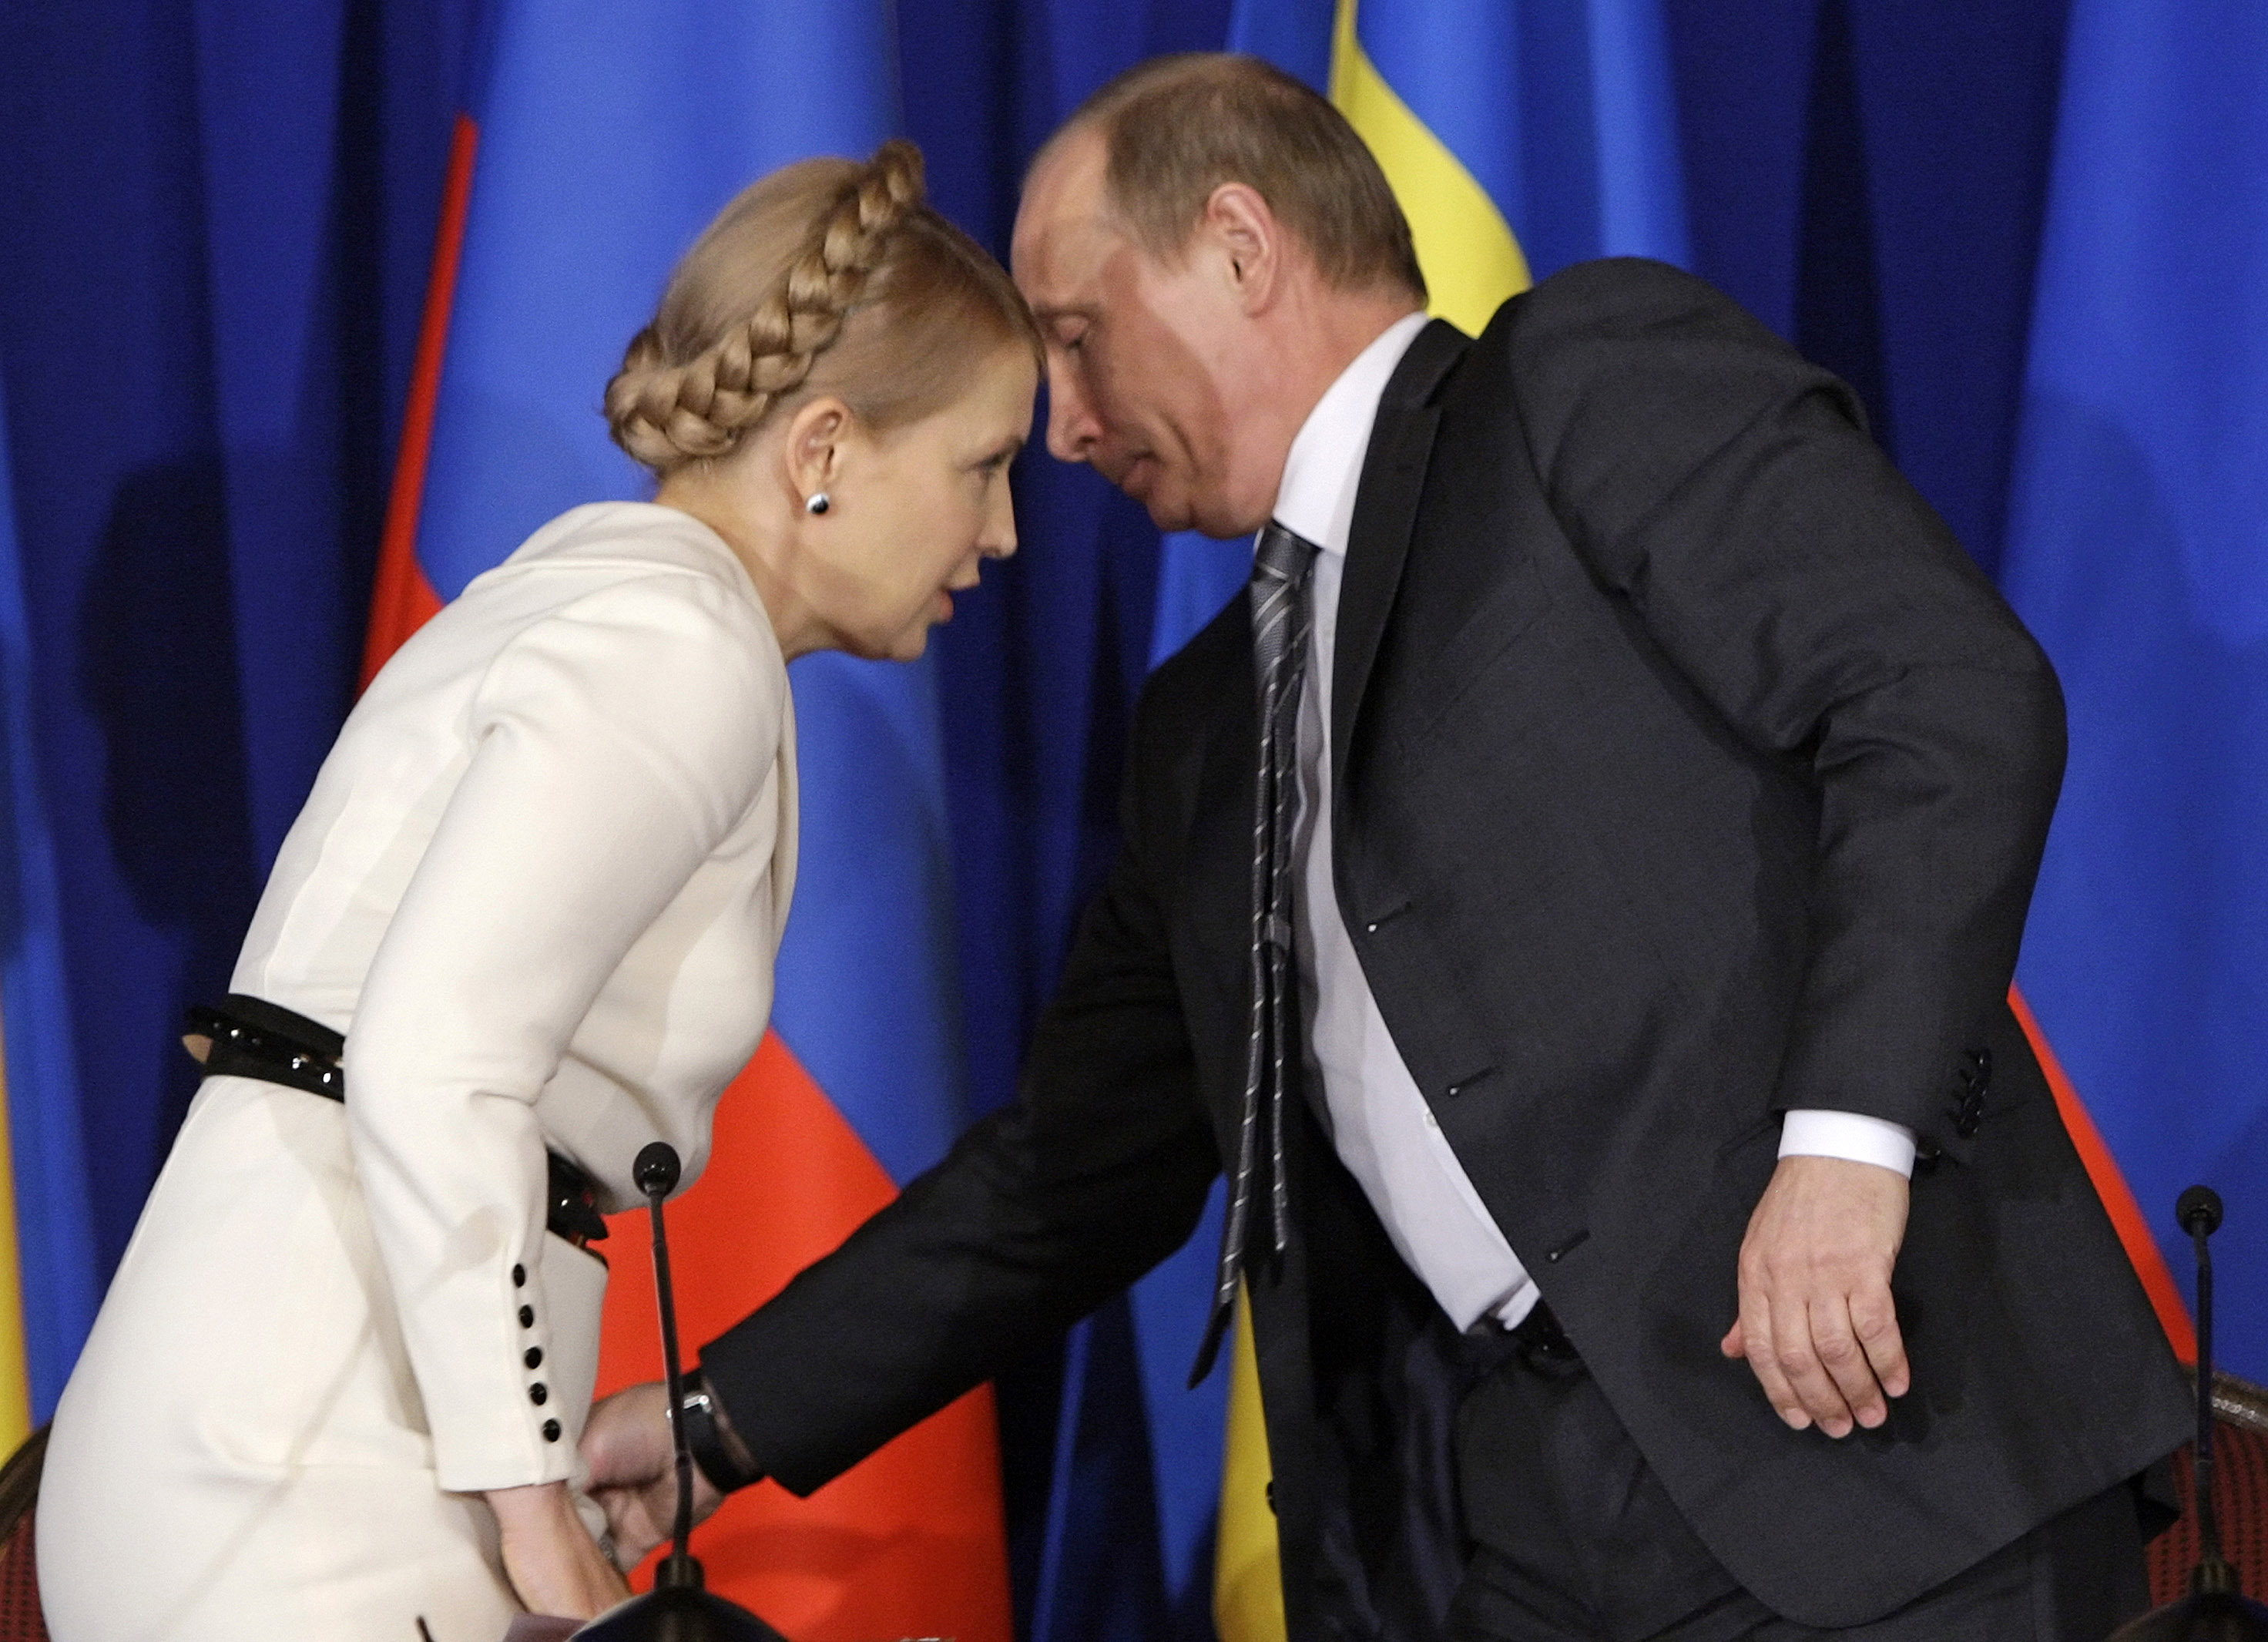 2/10. Април 2009. Док је Путин био премијер, између свог другог и трећег председничког мандата, у више наврата сретао се са украјинском колегиницом Јулијом Тимошенко.